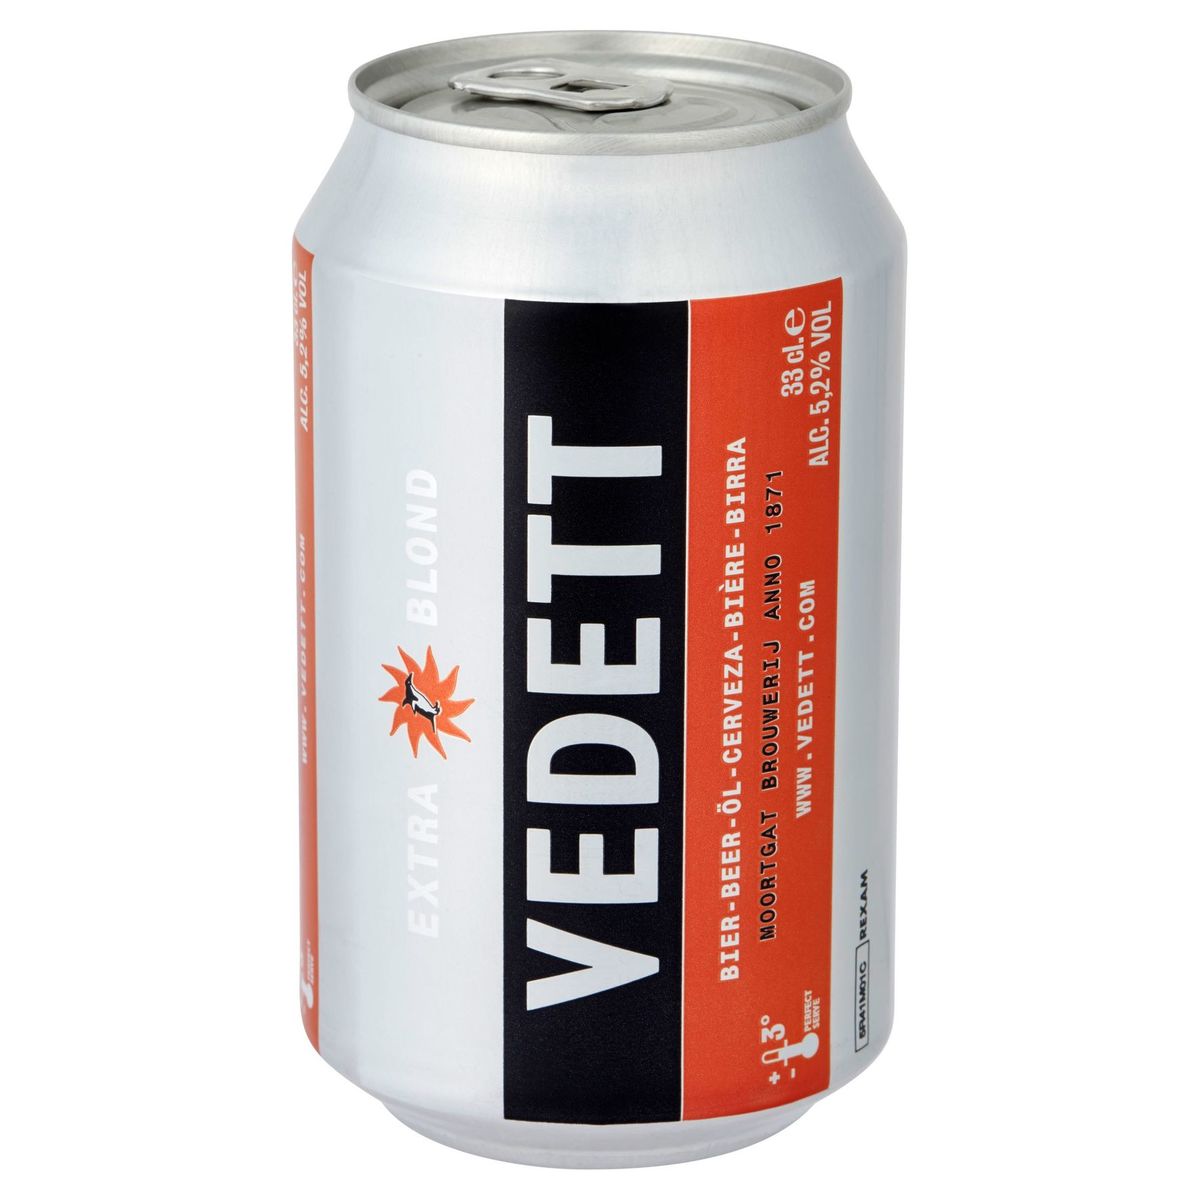 Vedett Extra Blond Bière Canette 33 cl